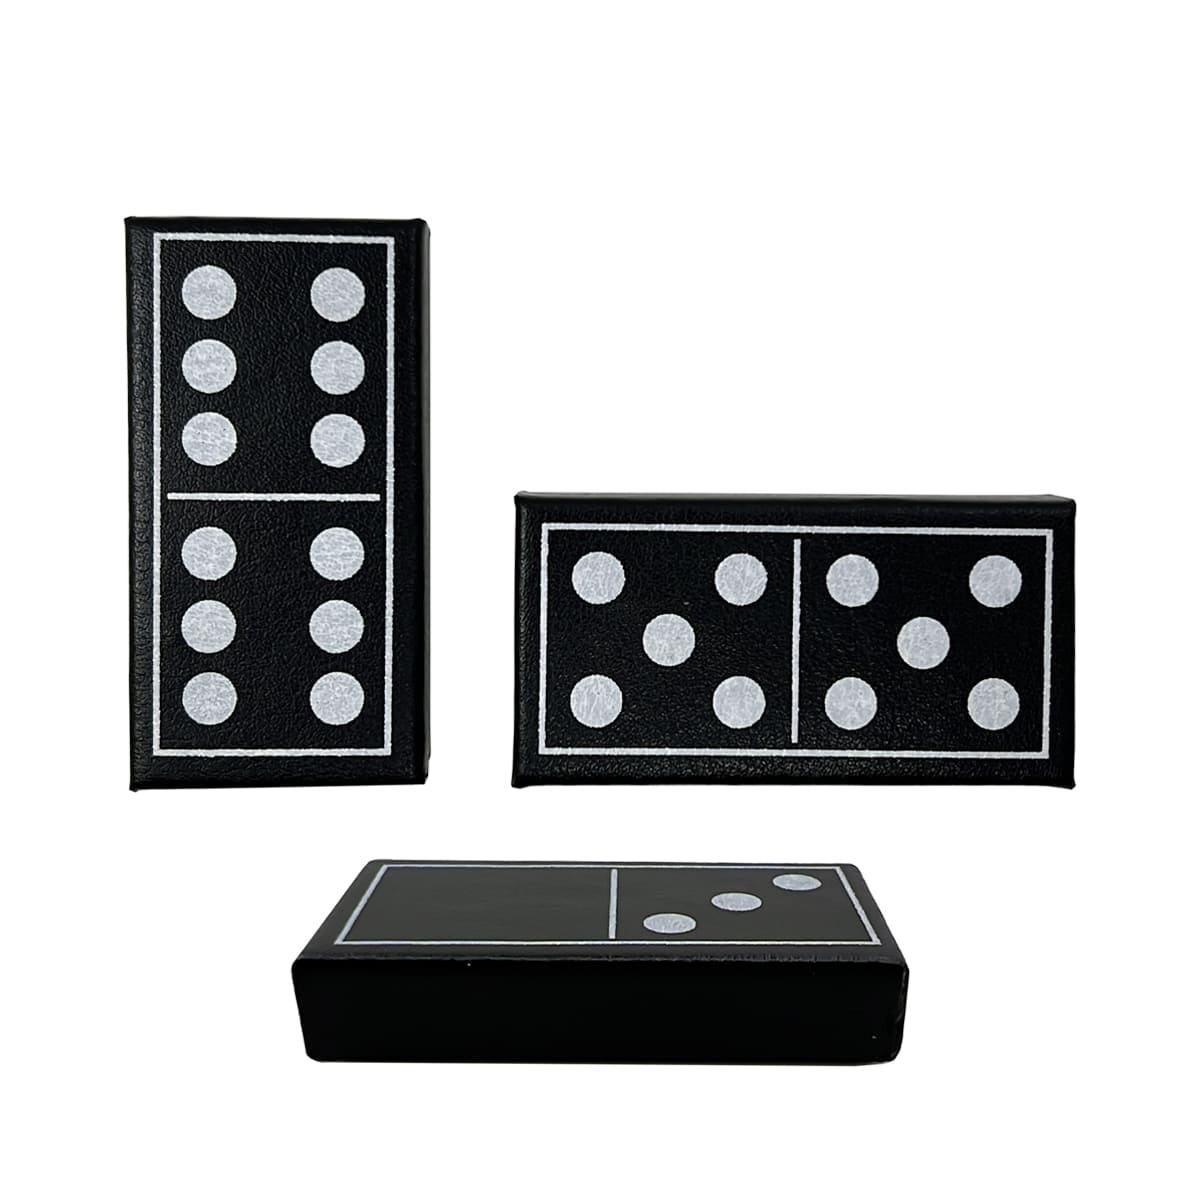 Ensembles de domino de luxe Double Six Standard 28 tuiles avec étui en cuir noir